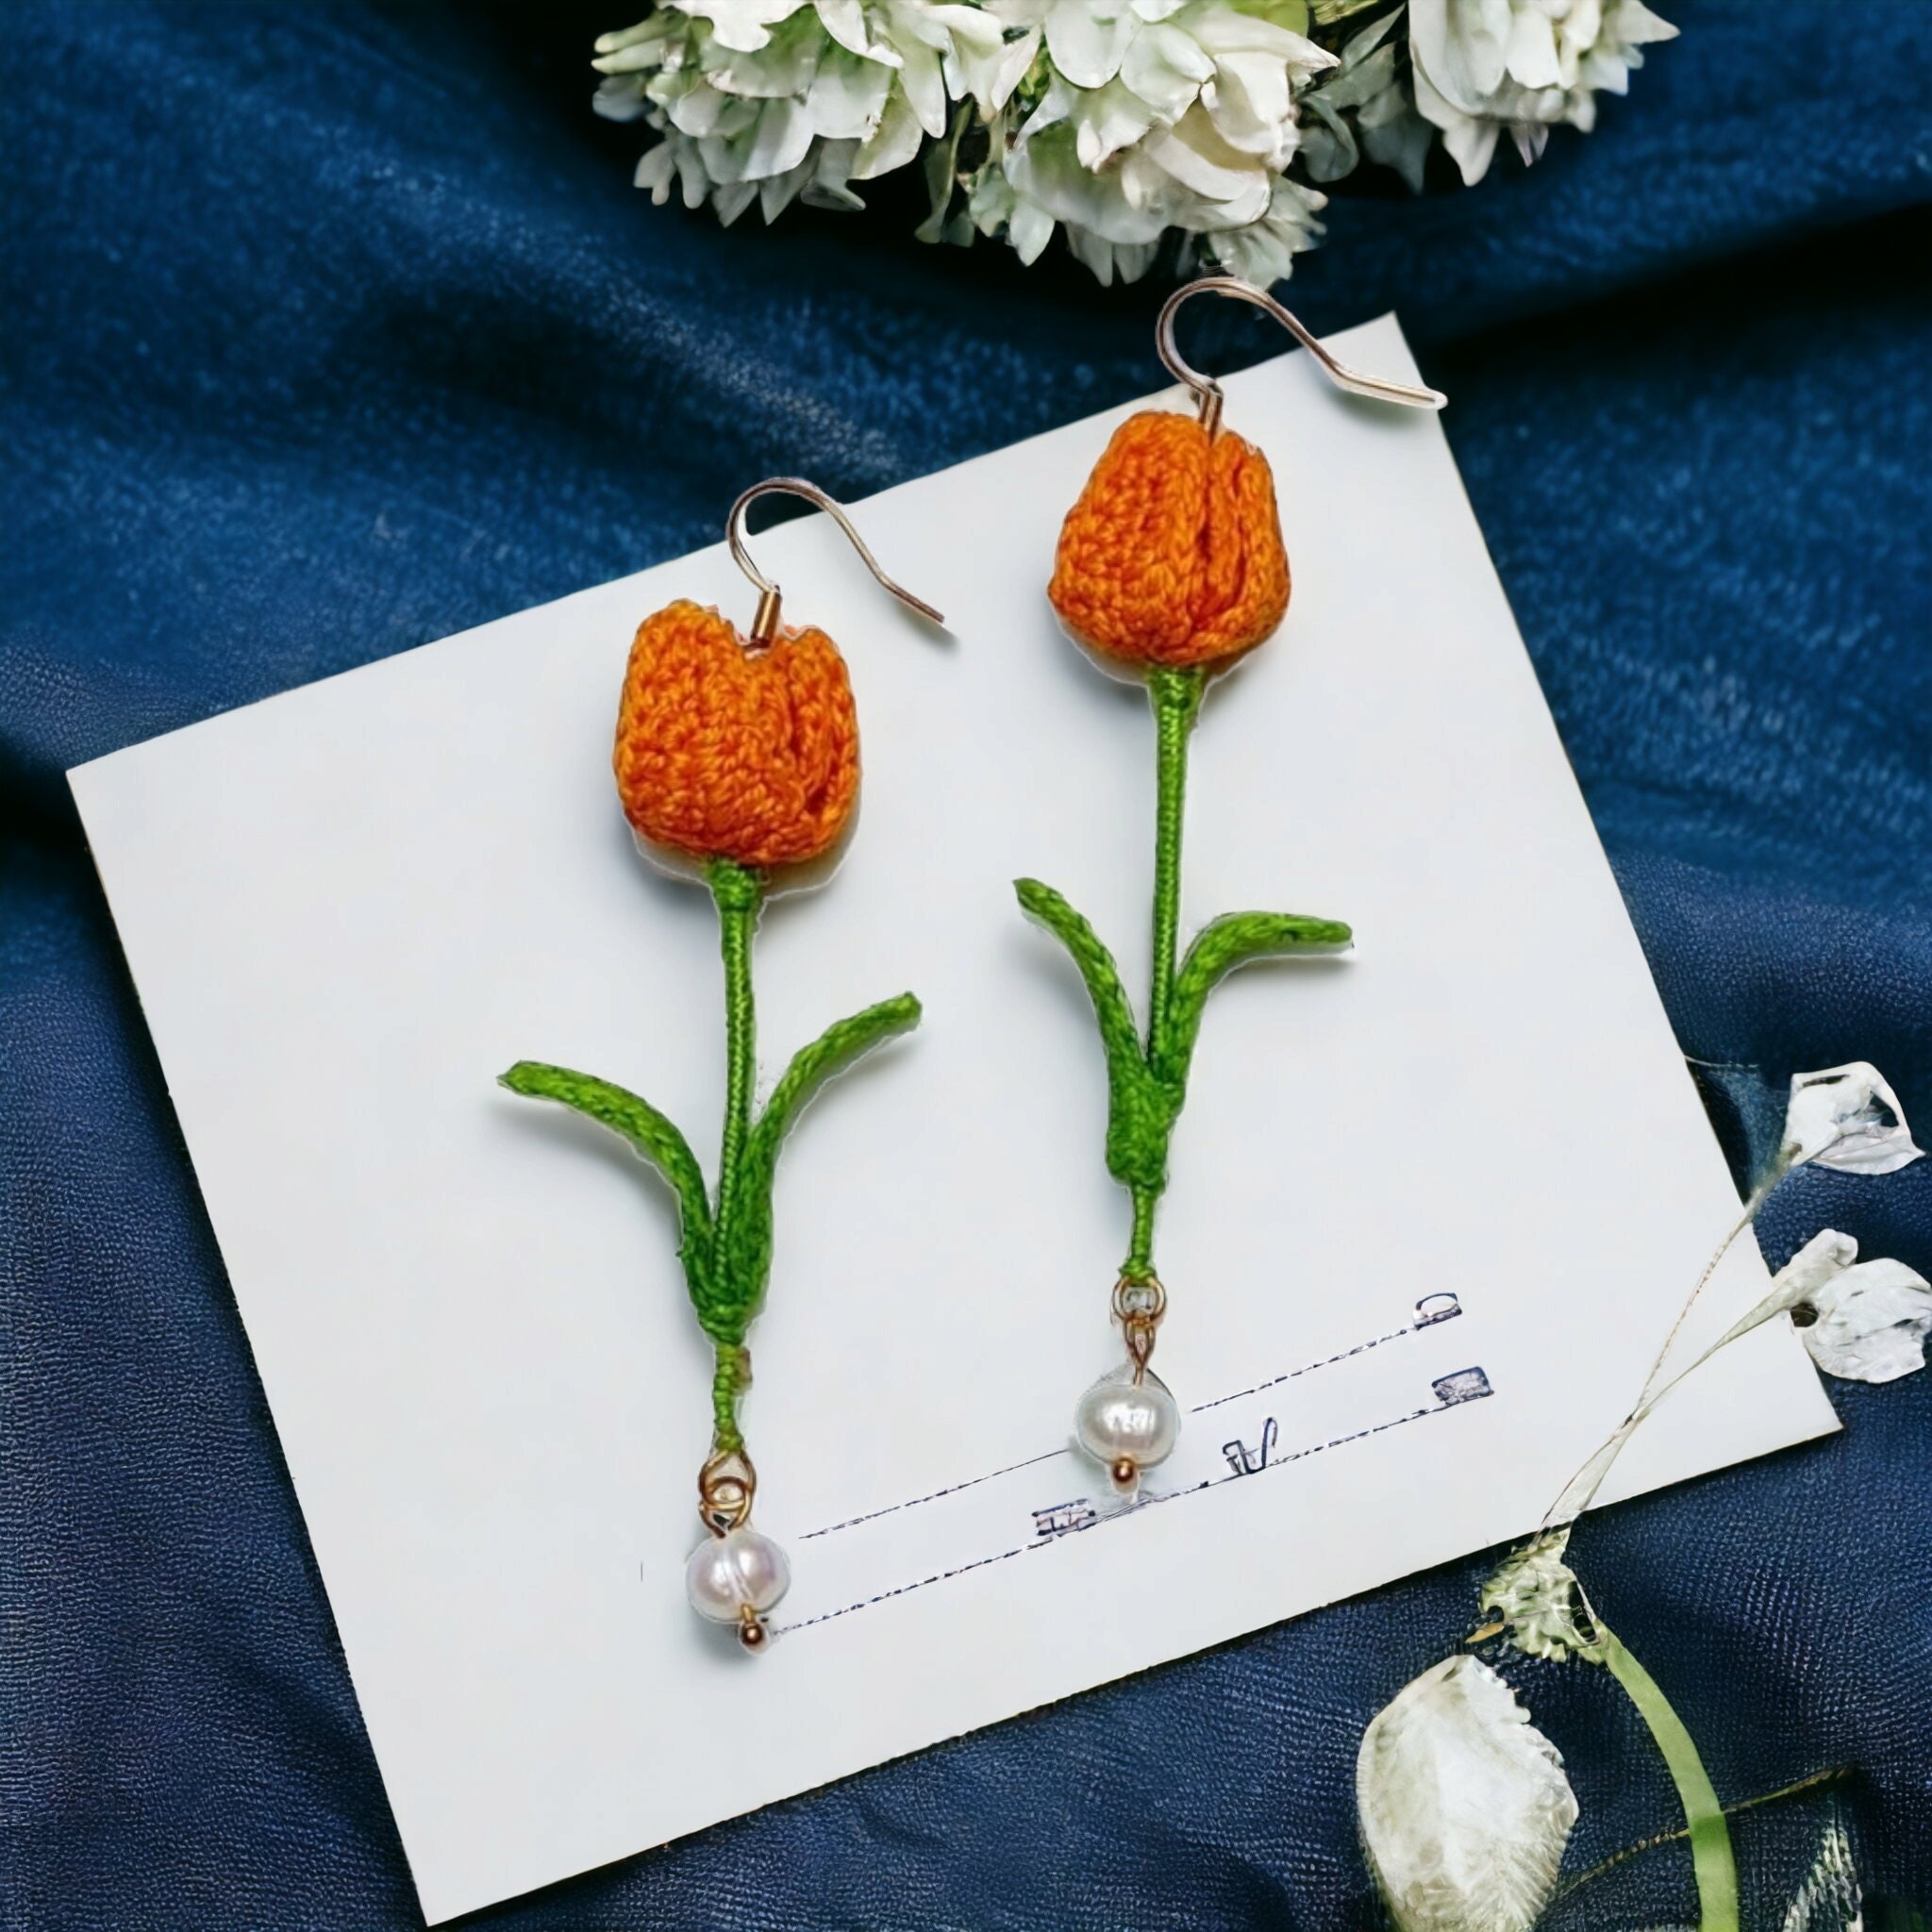 Handmade Tulip Brooch, Crochet Tulip Brooch, Tulip Pin, Handmade Tul –  MiniCrochet, Mini Crochet